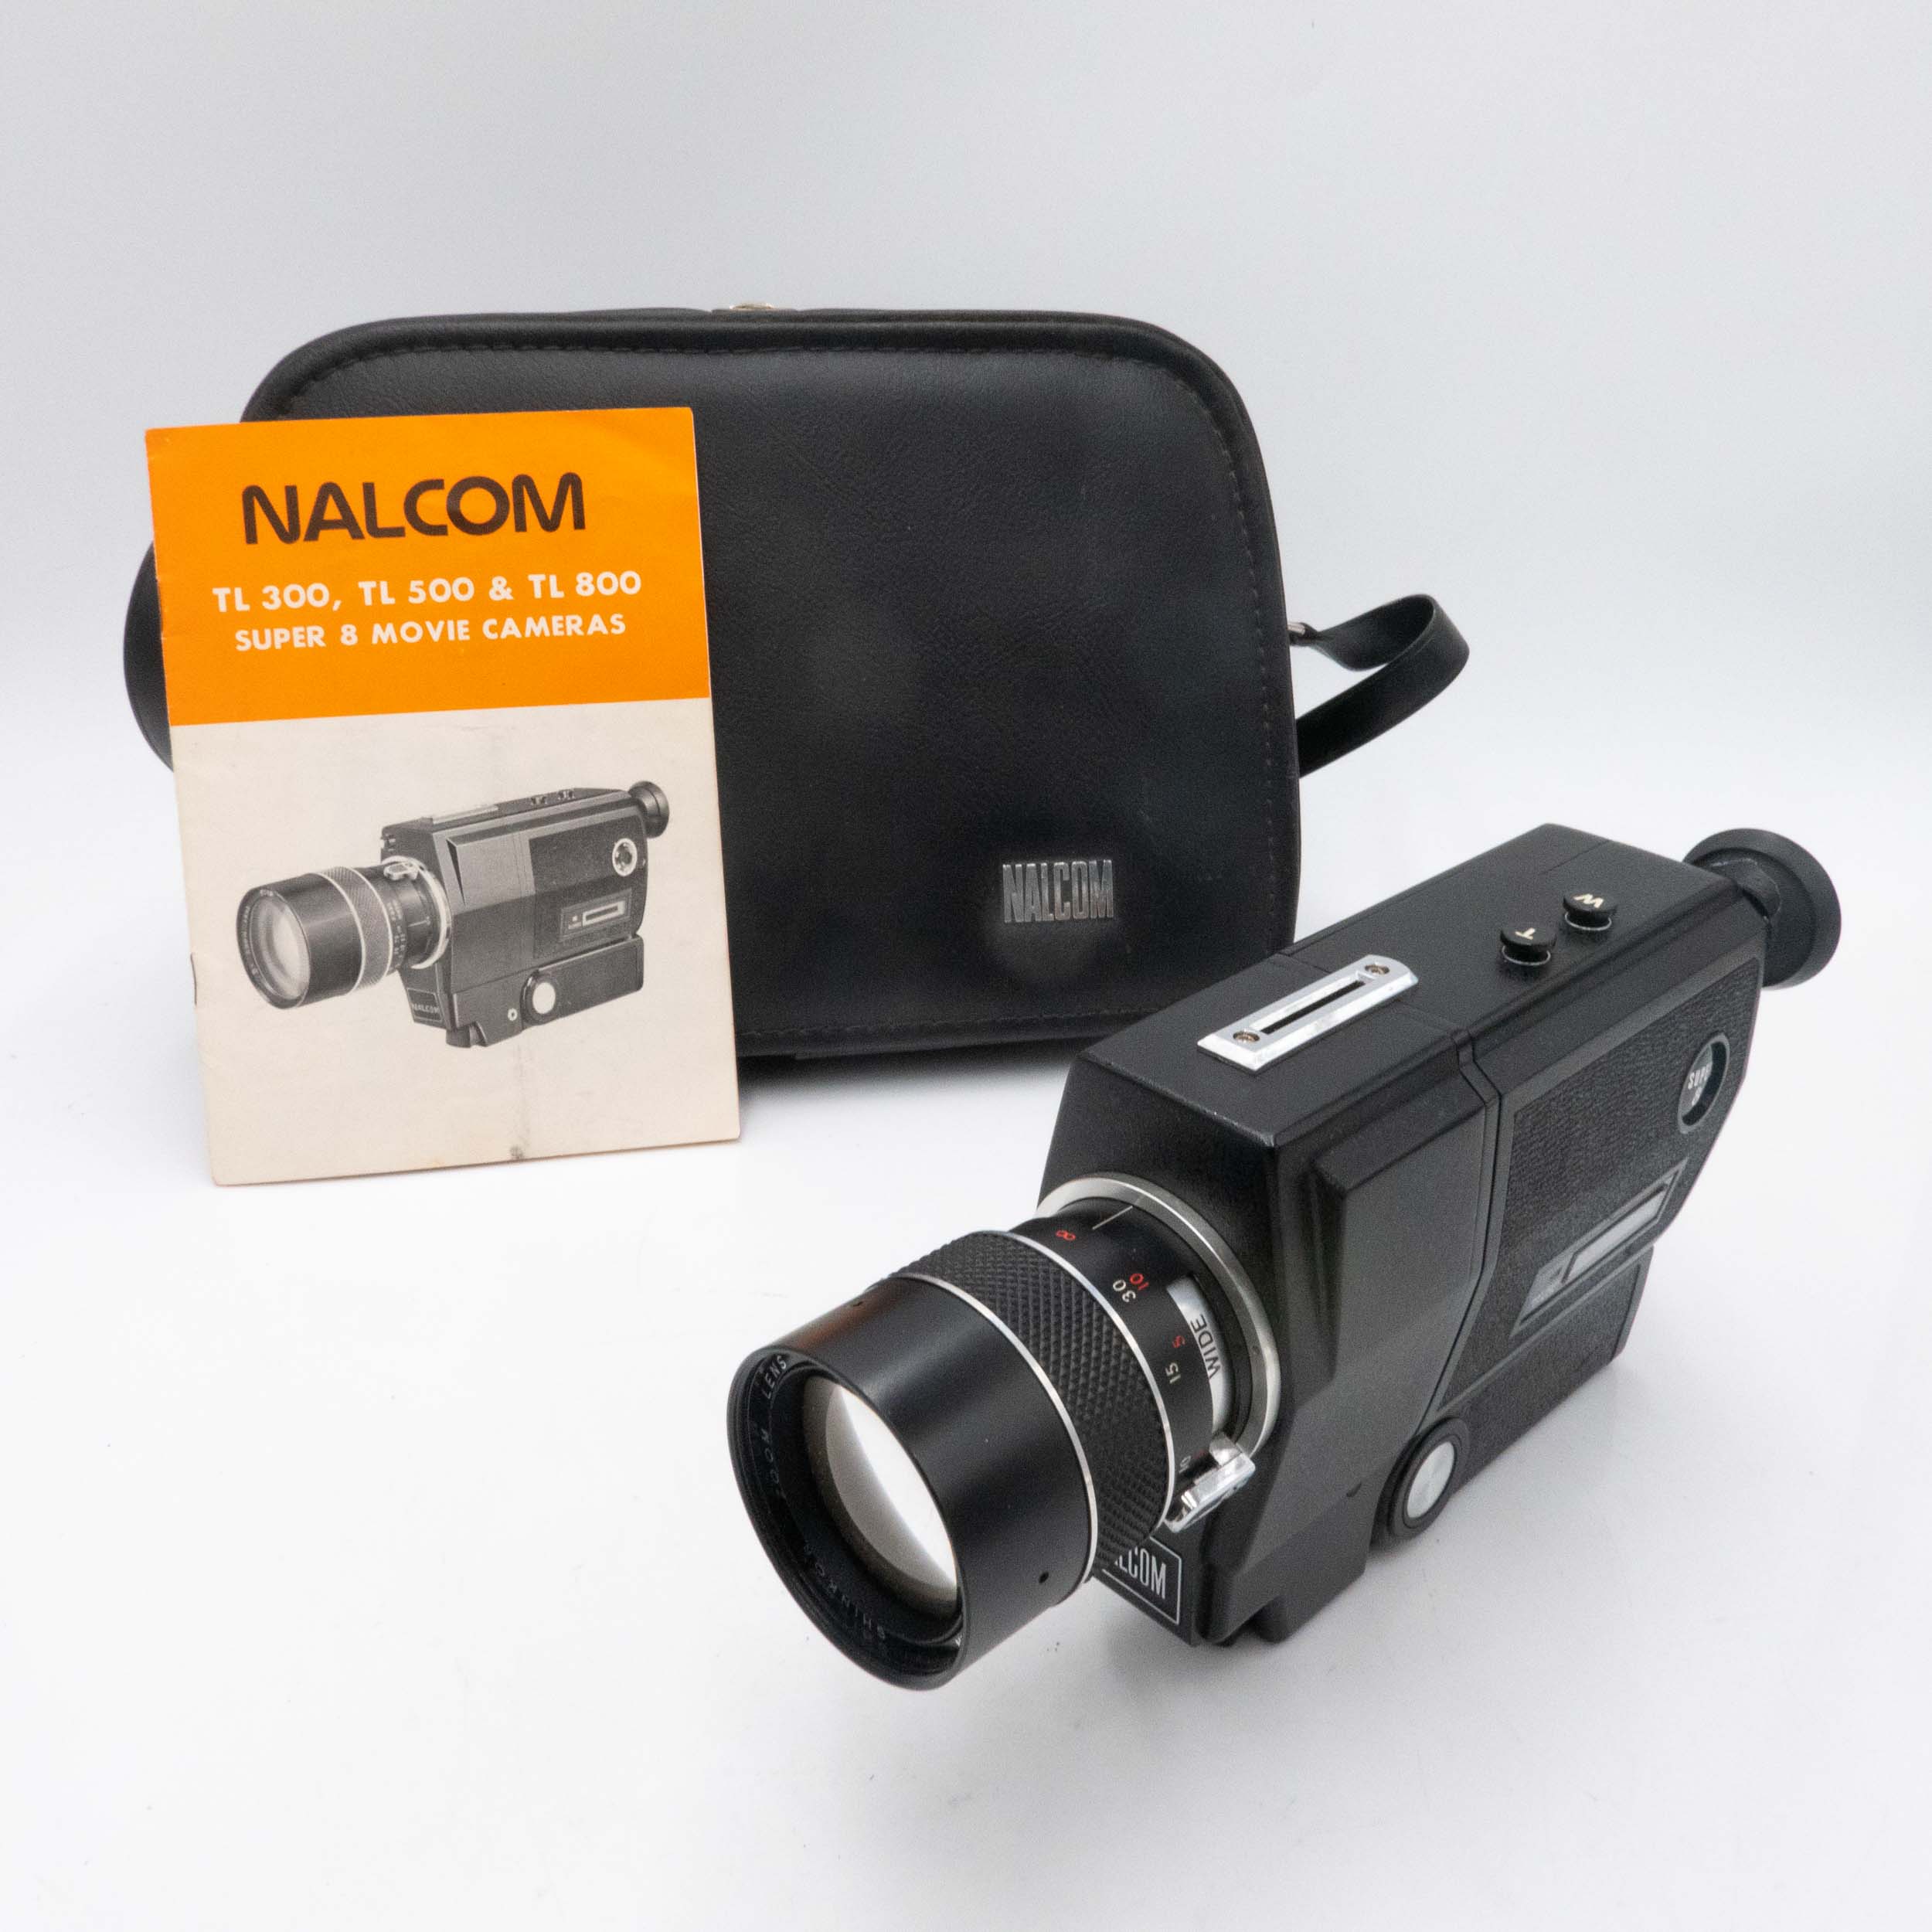 Nalcom TL-300 Super 8 Camera